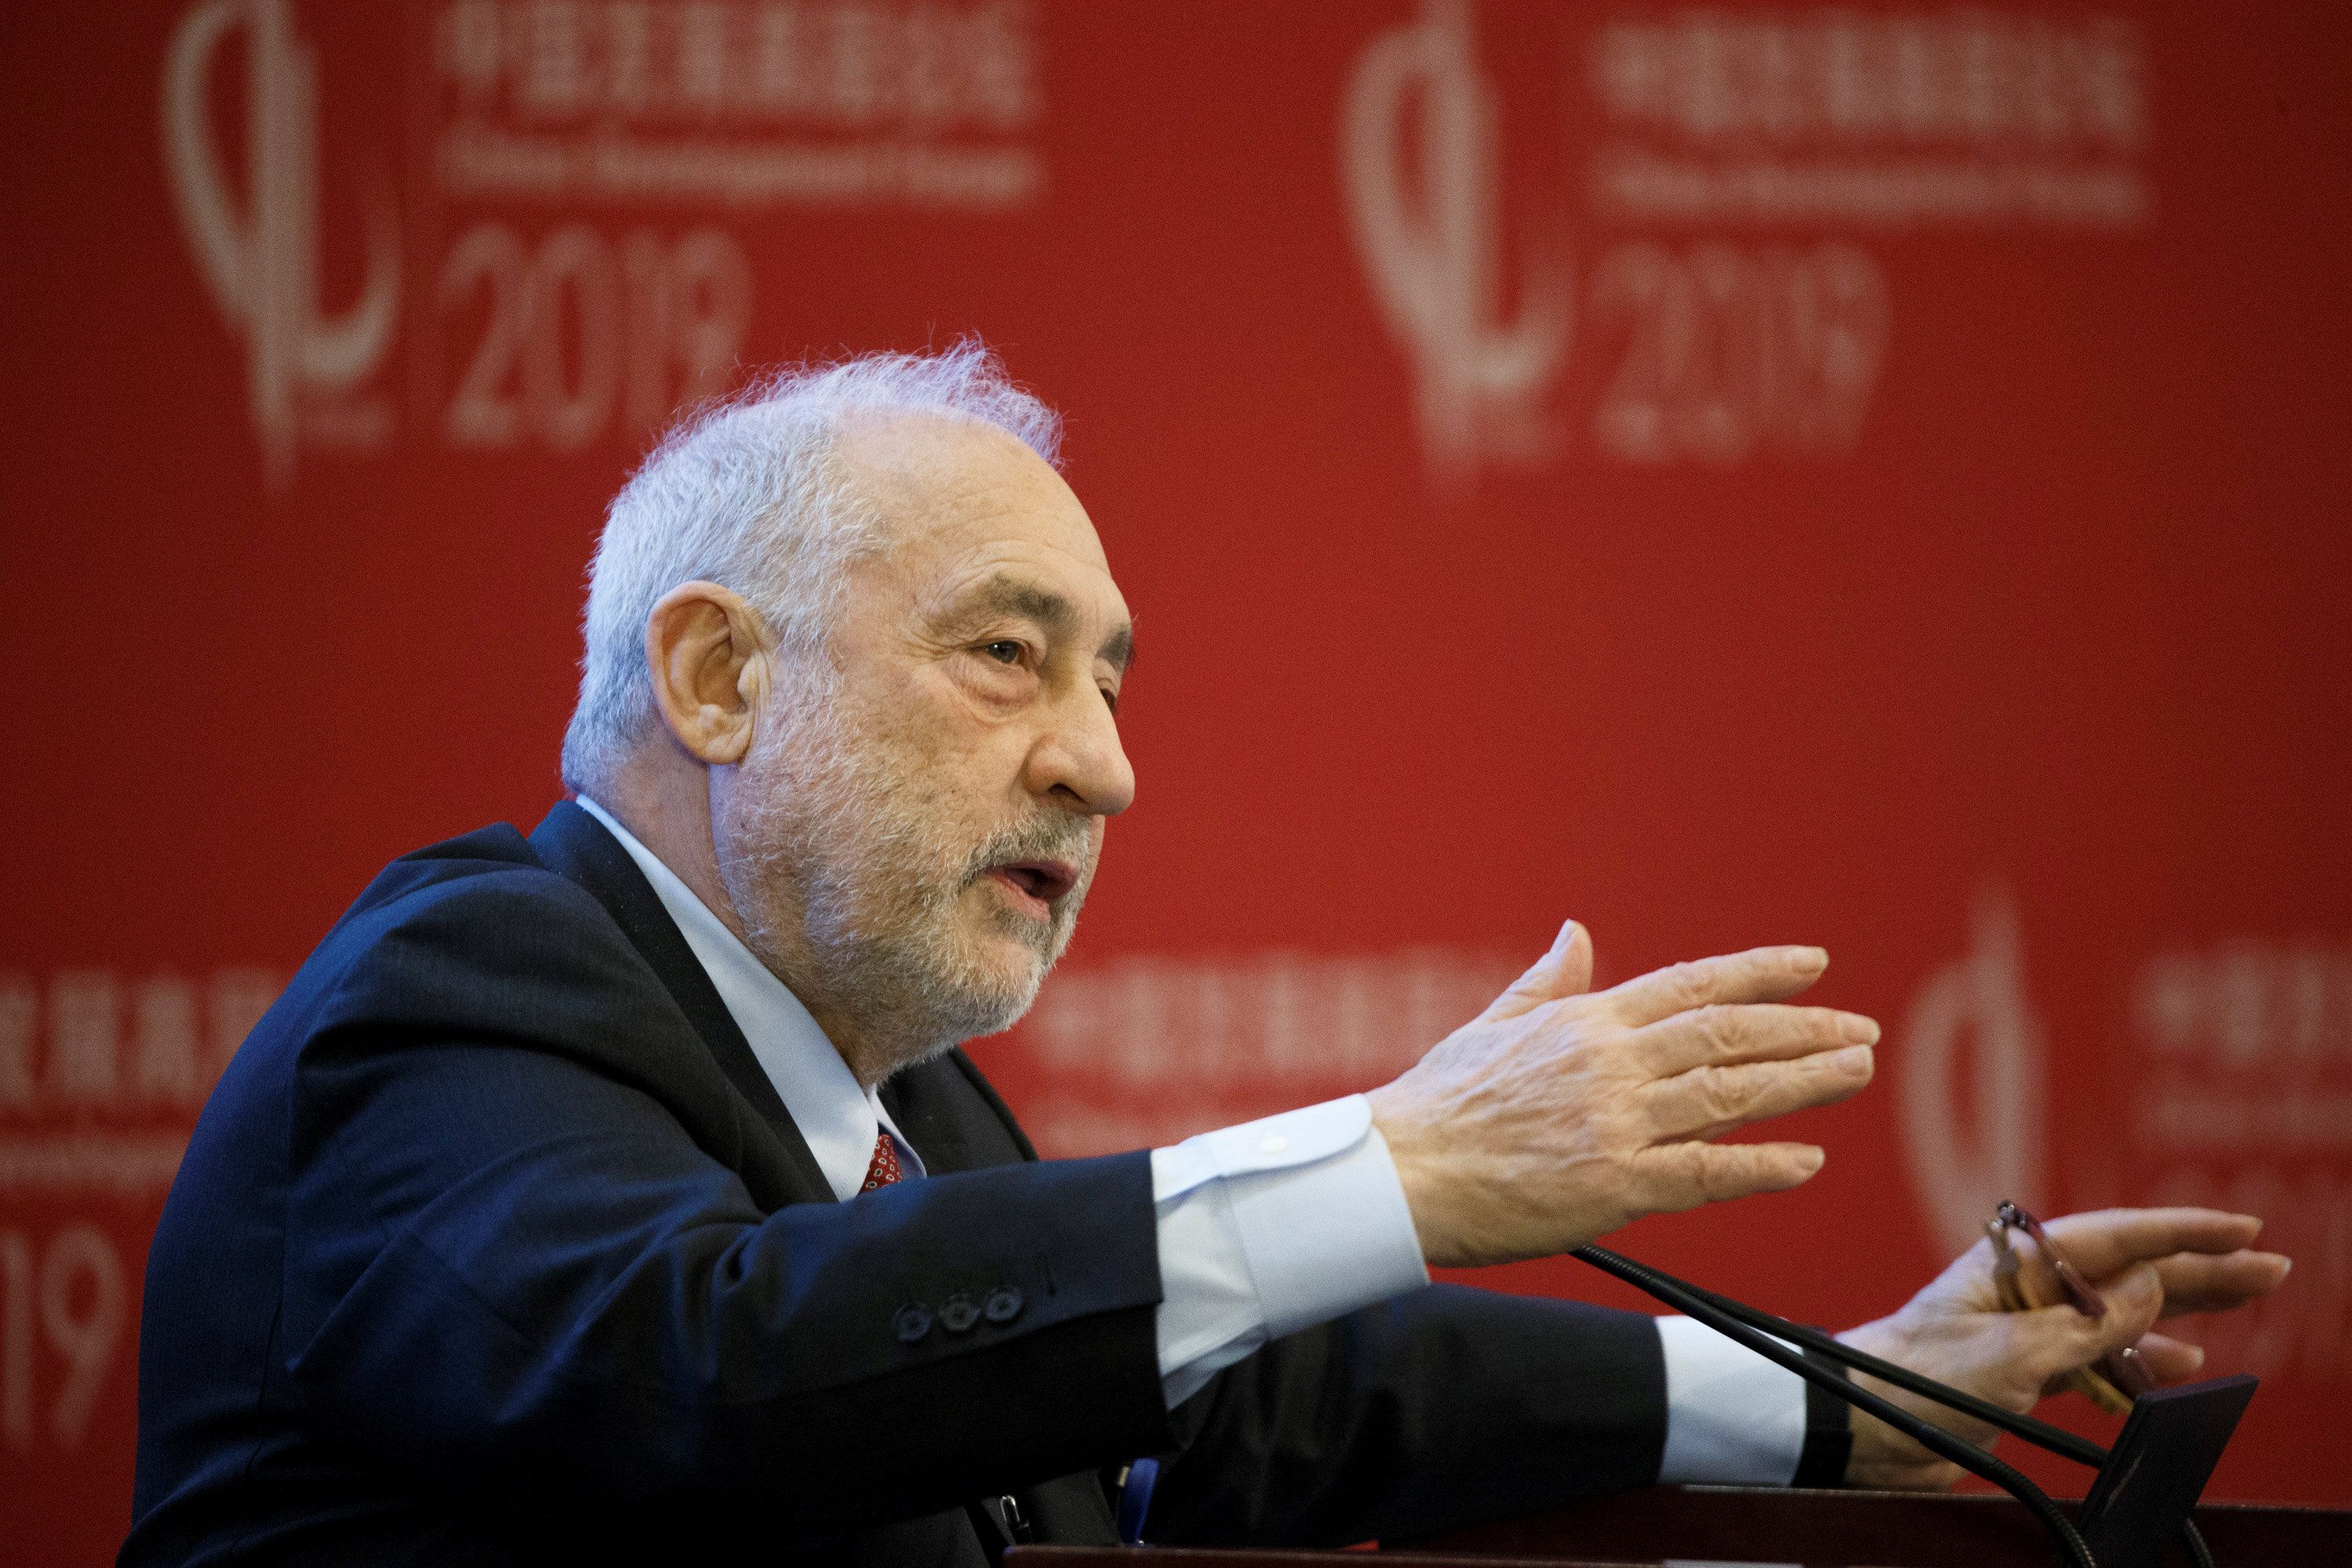 La deuda es excesiva, van a tener que aceptar "recortes significativos" fue el mensaje en Davos de Joseph Stiglitz (REUTERS/Thomas Peter/Pool)